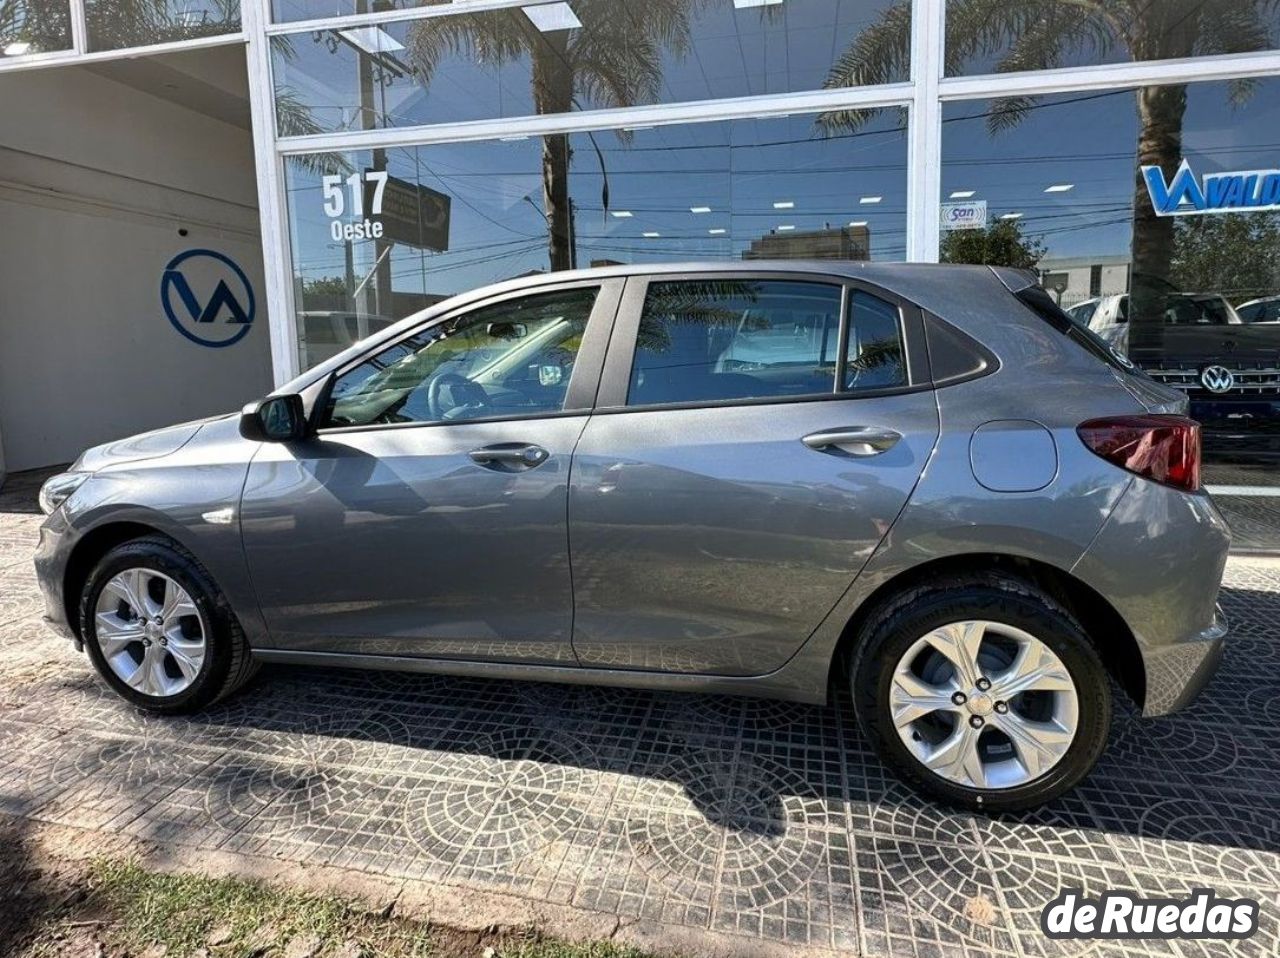 Chevrolet Onix Nuevo en San Juan, deRuedas